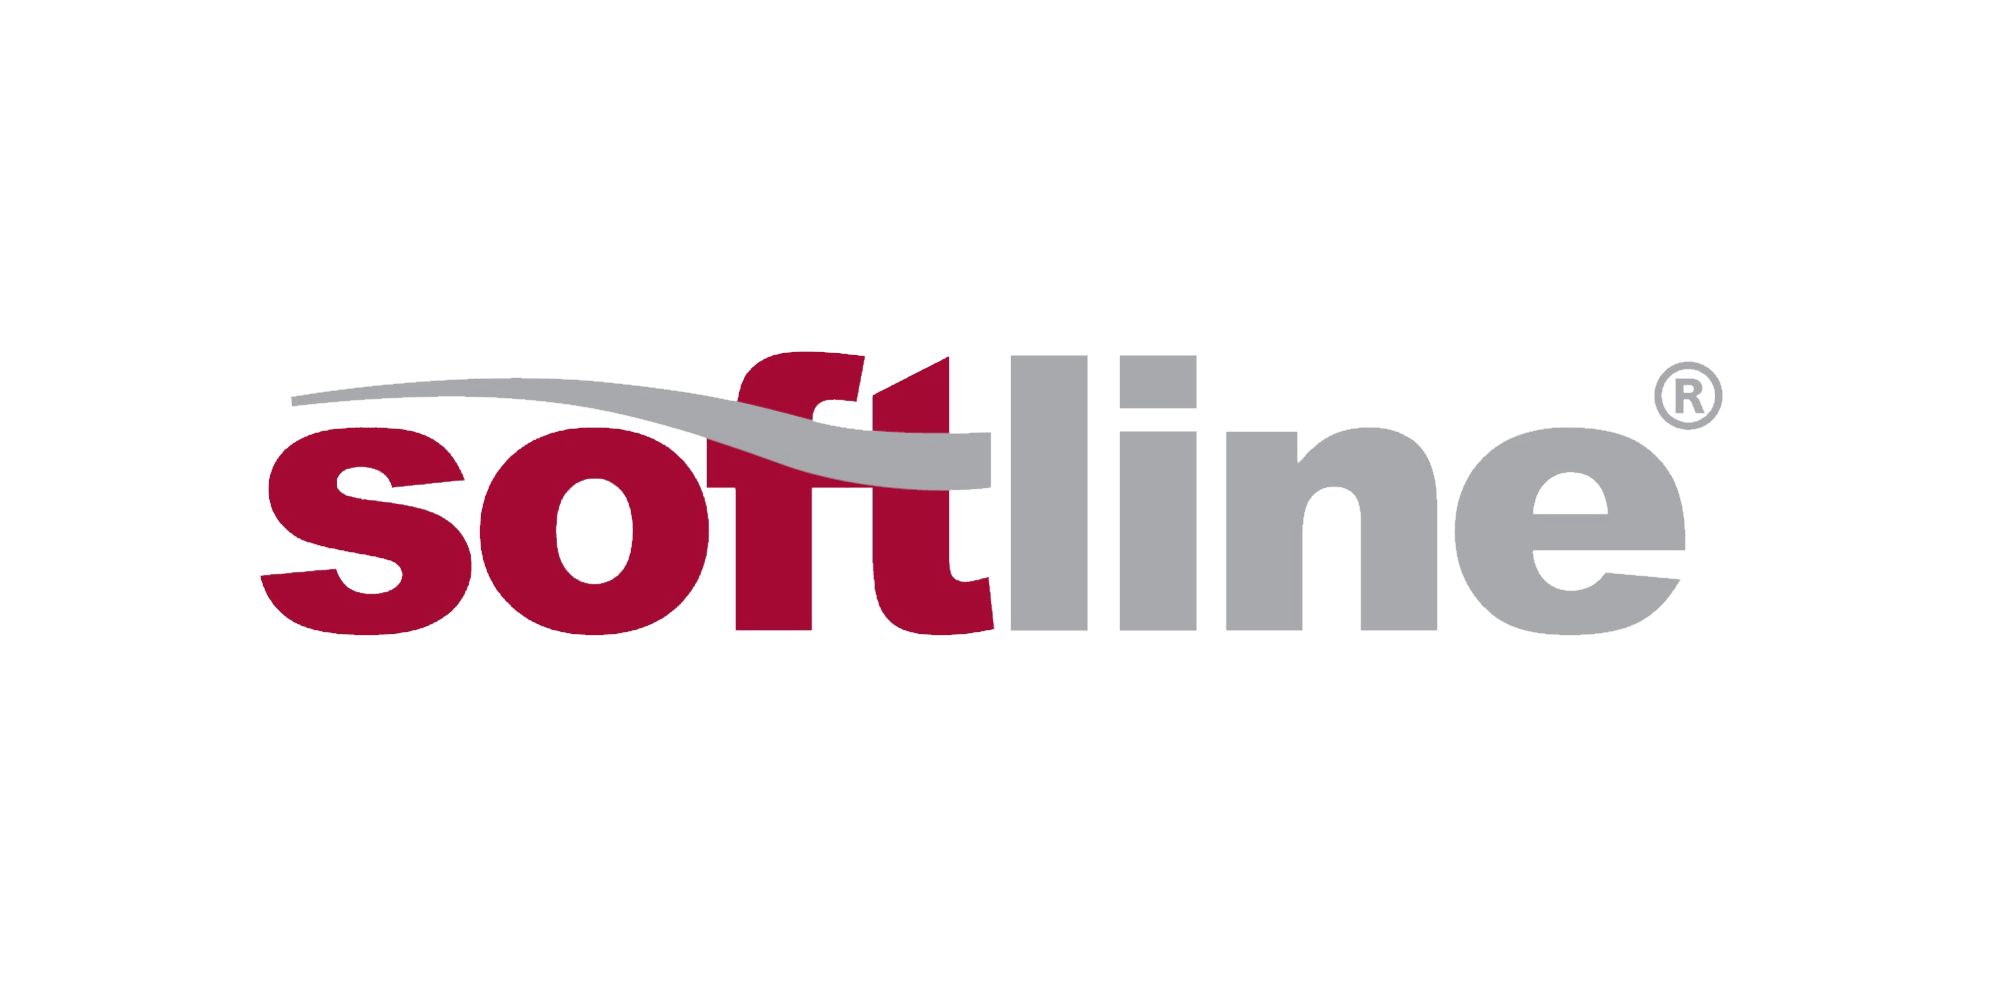 Line kz. Компания Софтлайн логотип. Софтлайн ТРЕЙД. Логотип Софтлайн без фона. Softline компания Москва.